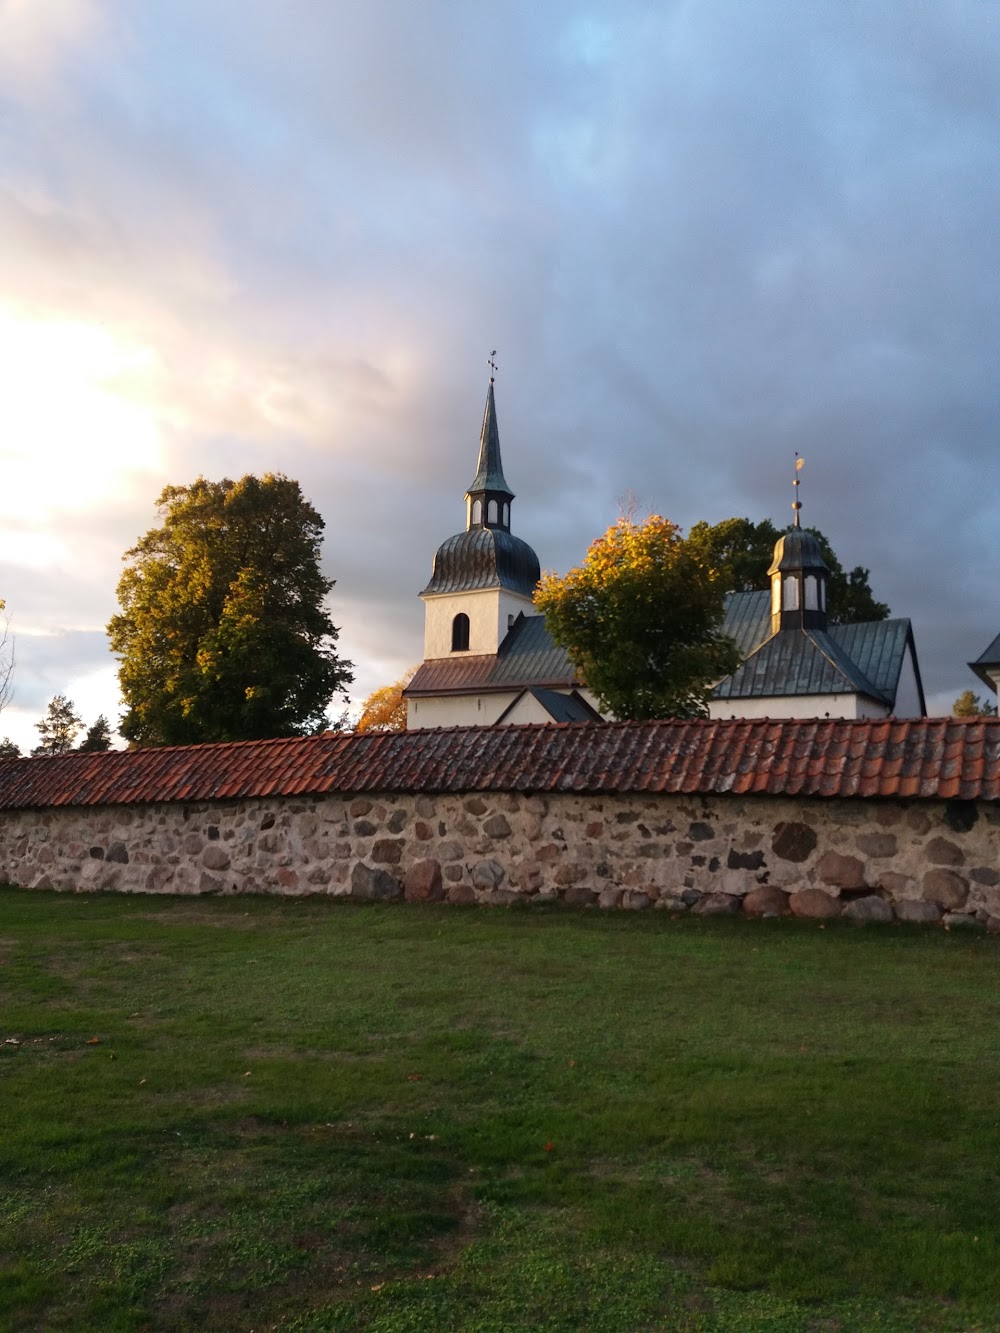 Husby-Rekarne kyrka